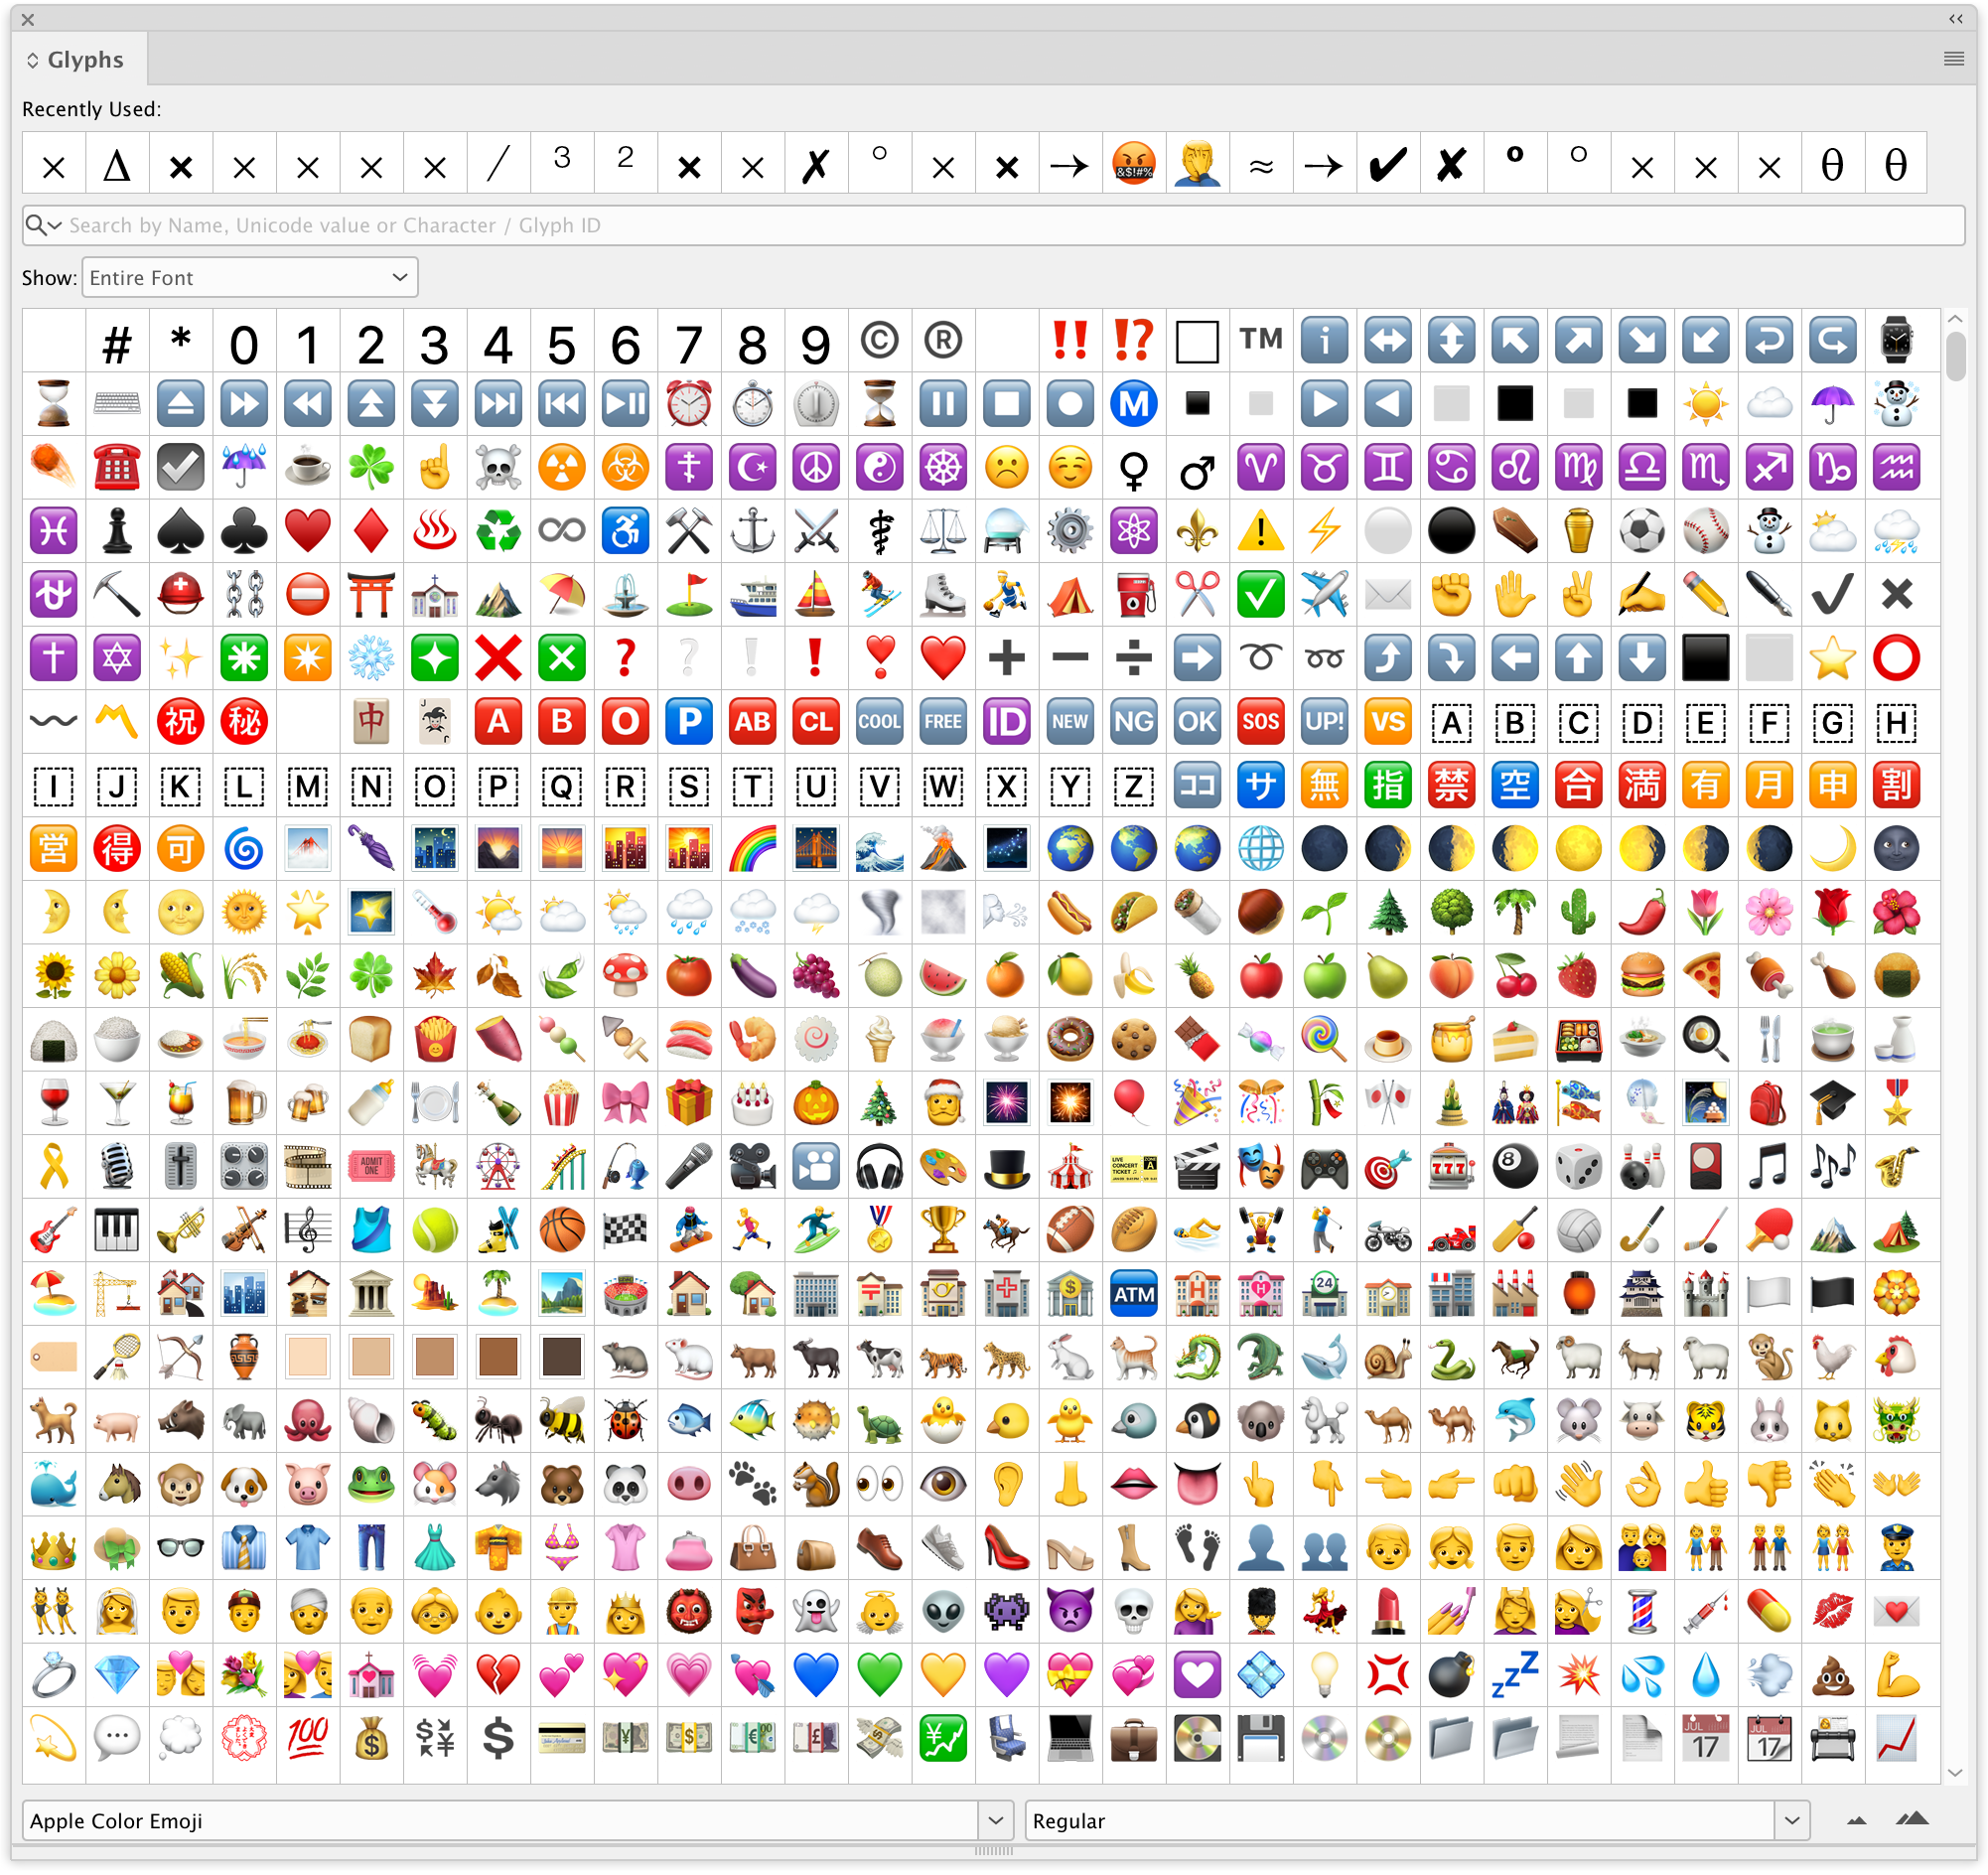 Nếu bạn đã chán những biểu tượng cảm xúc thông thường, hãy khám phá bộ chữ cái biểu tượng cảm xúc độc đáo này. Với giao diện đầy màu sắc và phù hợp với đa dạng mục đích sử dụng, bộ font emojis tiếng Việt này sẽ làm bạn cảm thấy thích thú.